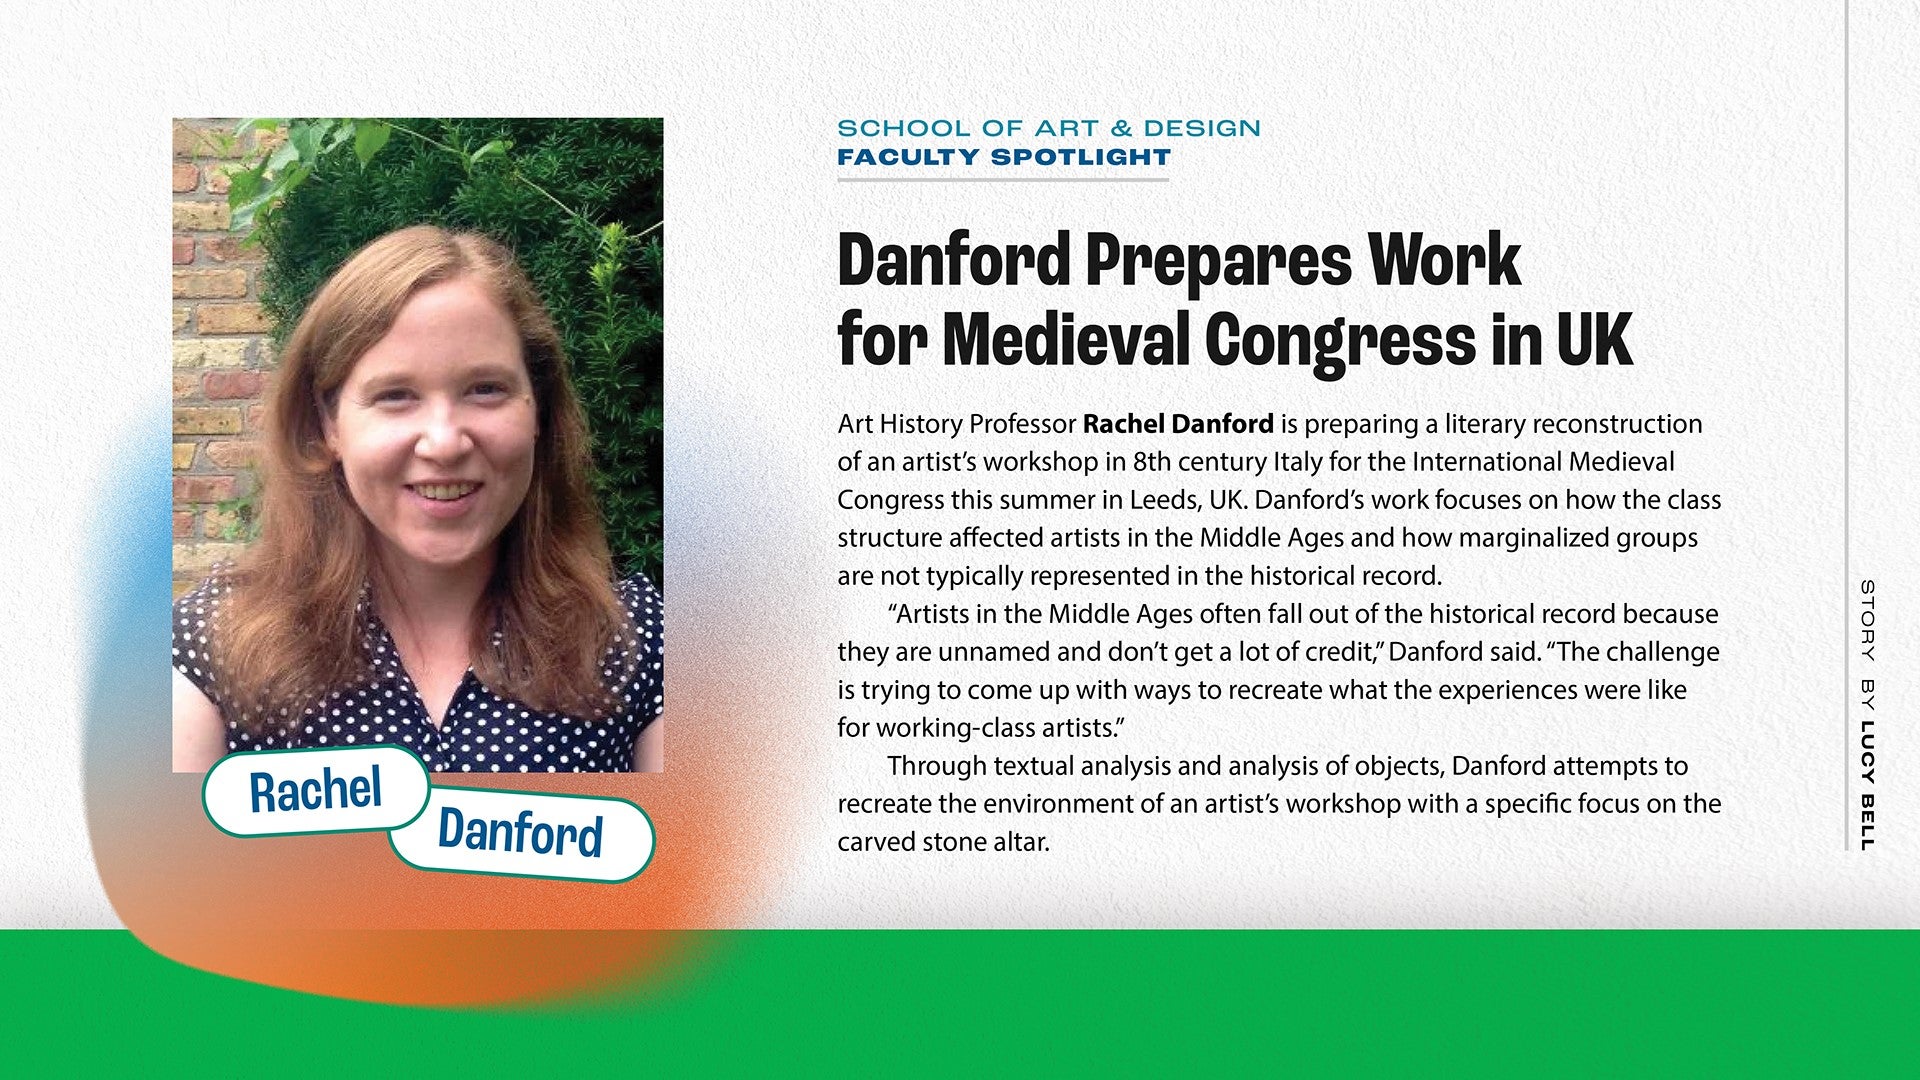 https://www.marshall.edu/art/files/Danford-Prepares-Work-for-Medieval-Congress-in-UK.jpg